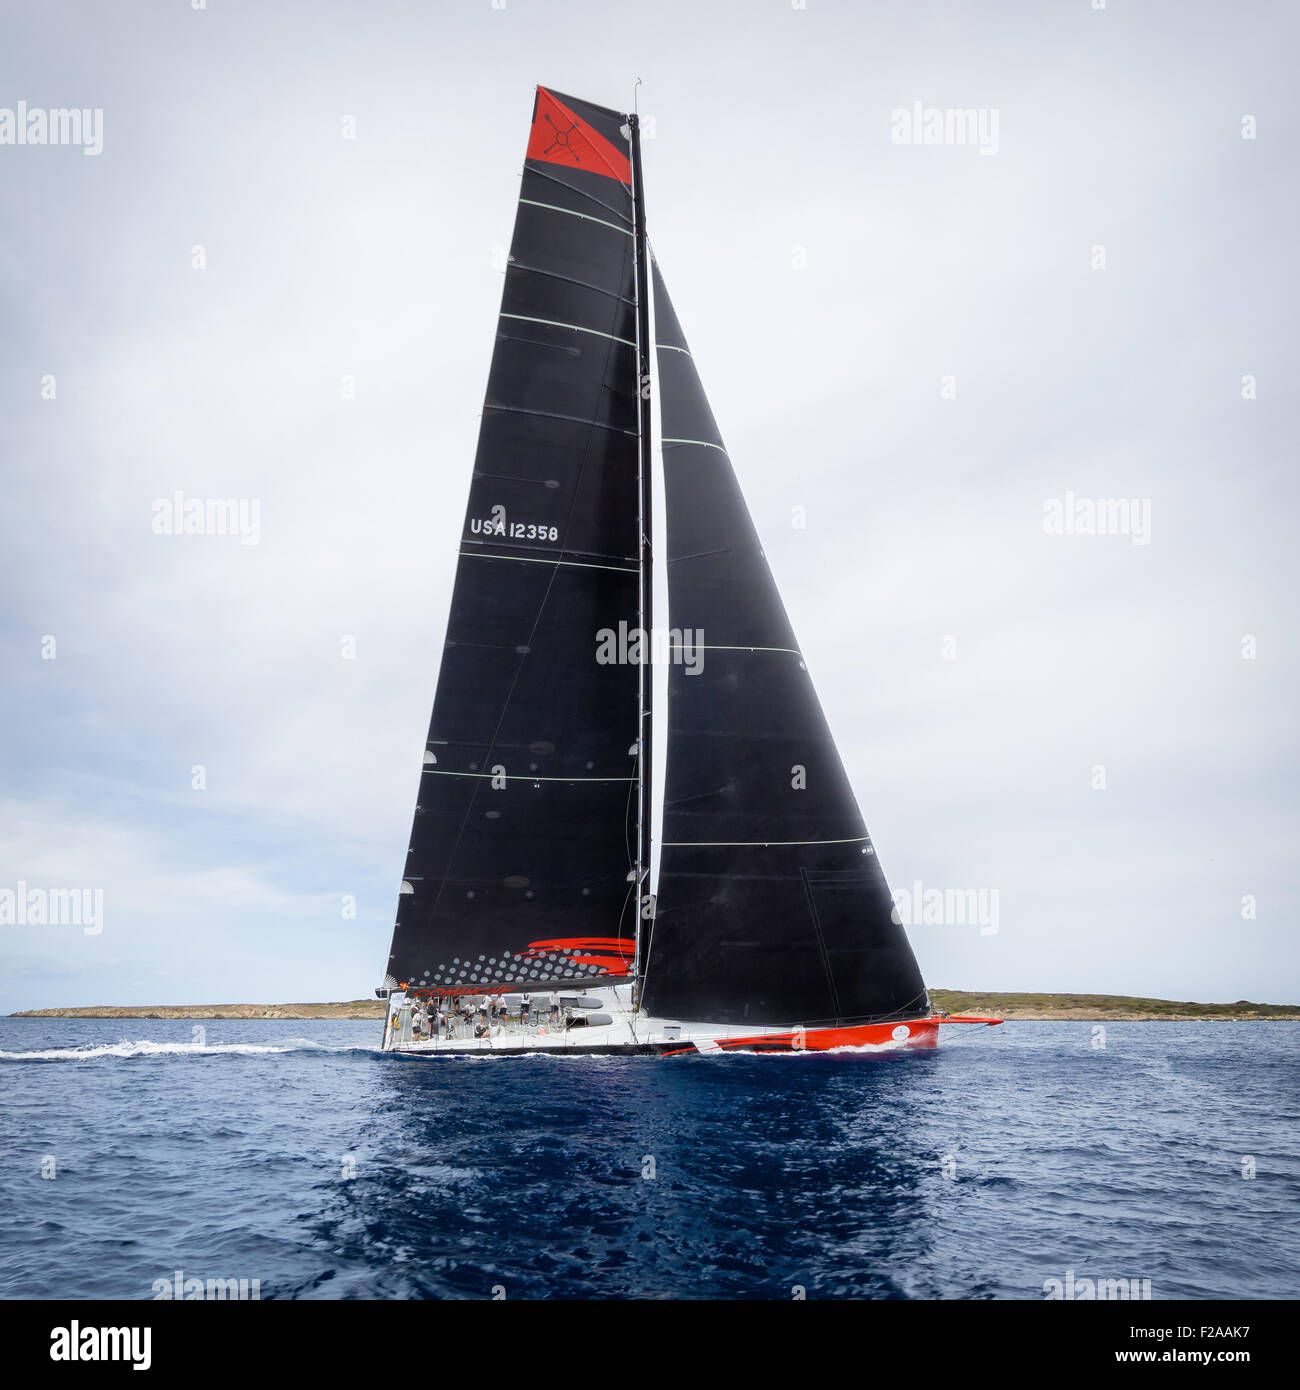 Maxi Yacht Rolex Cup 2015 sail boat race. Porto Cervo, Sardinia, Italy Stock Photo